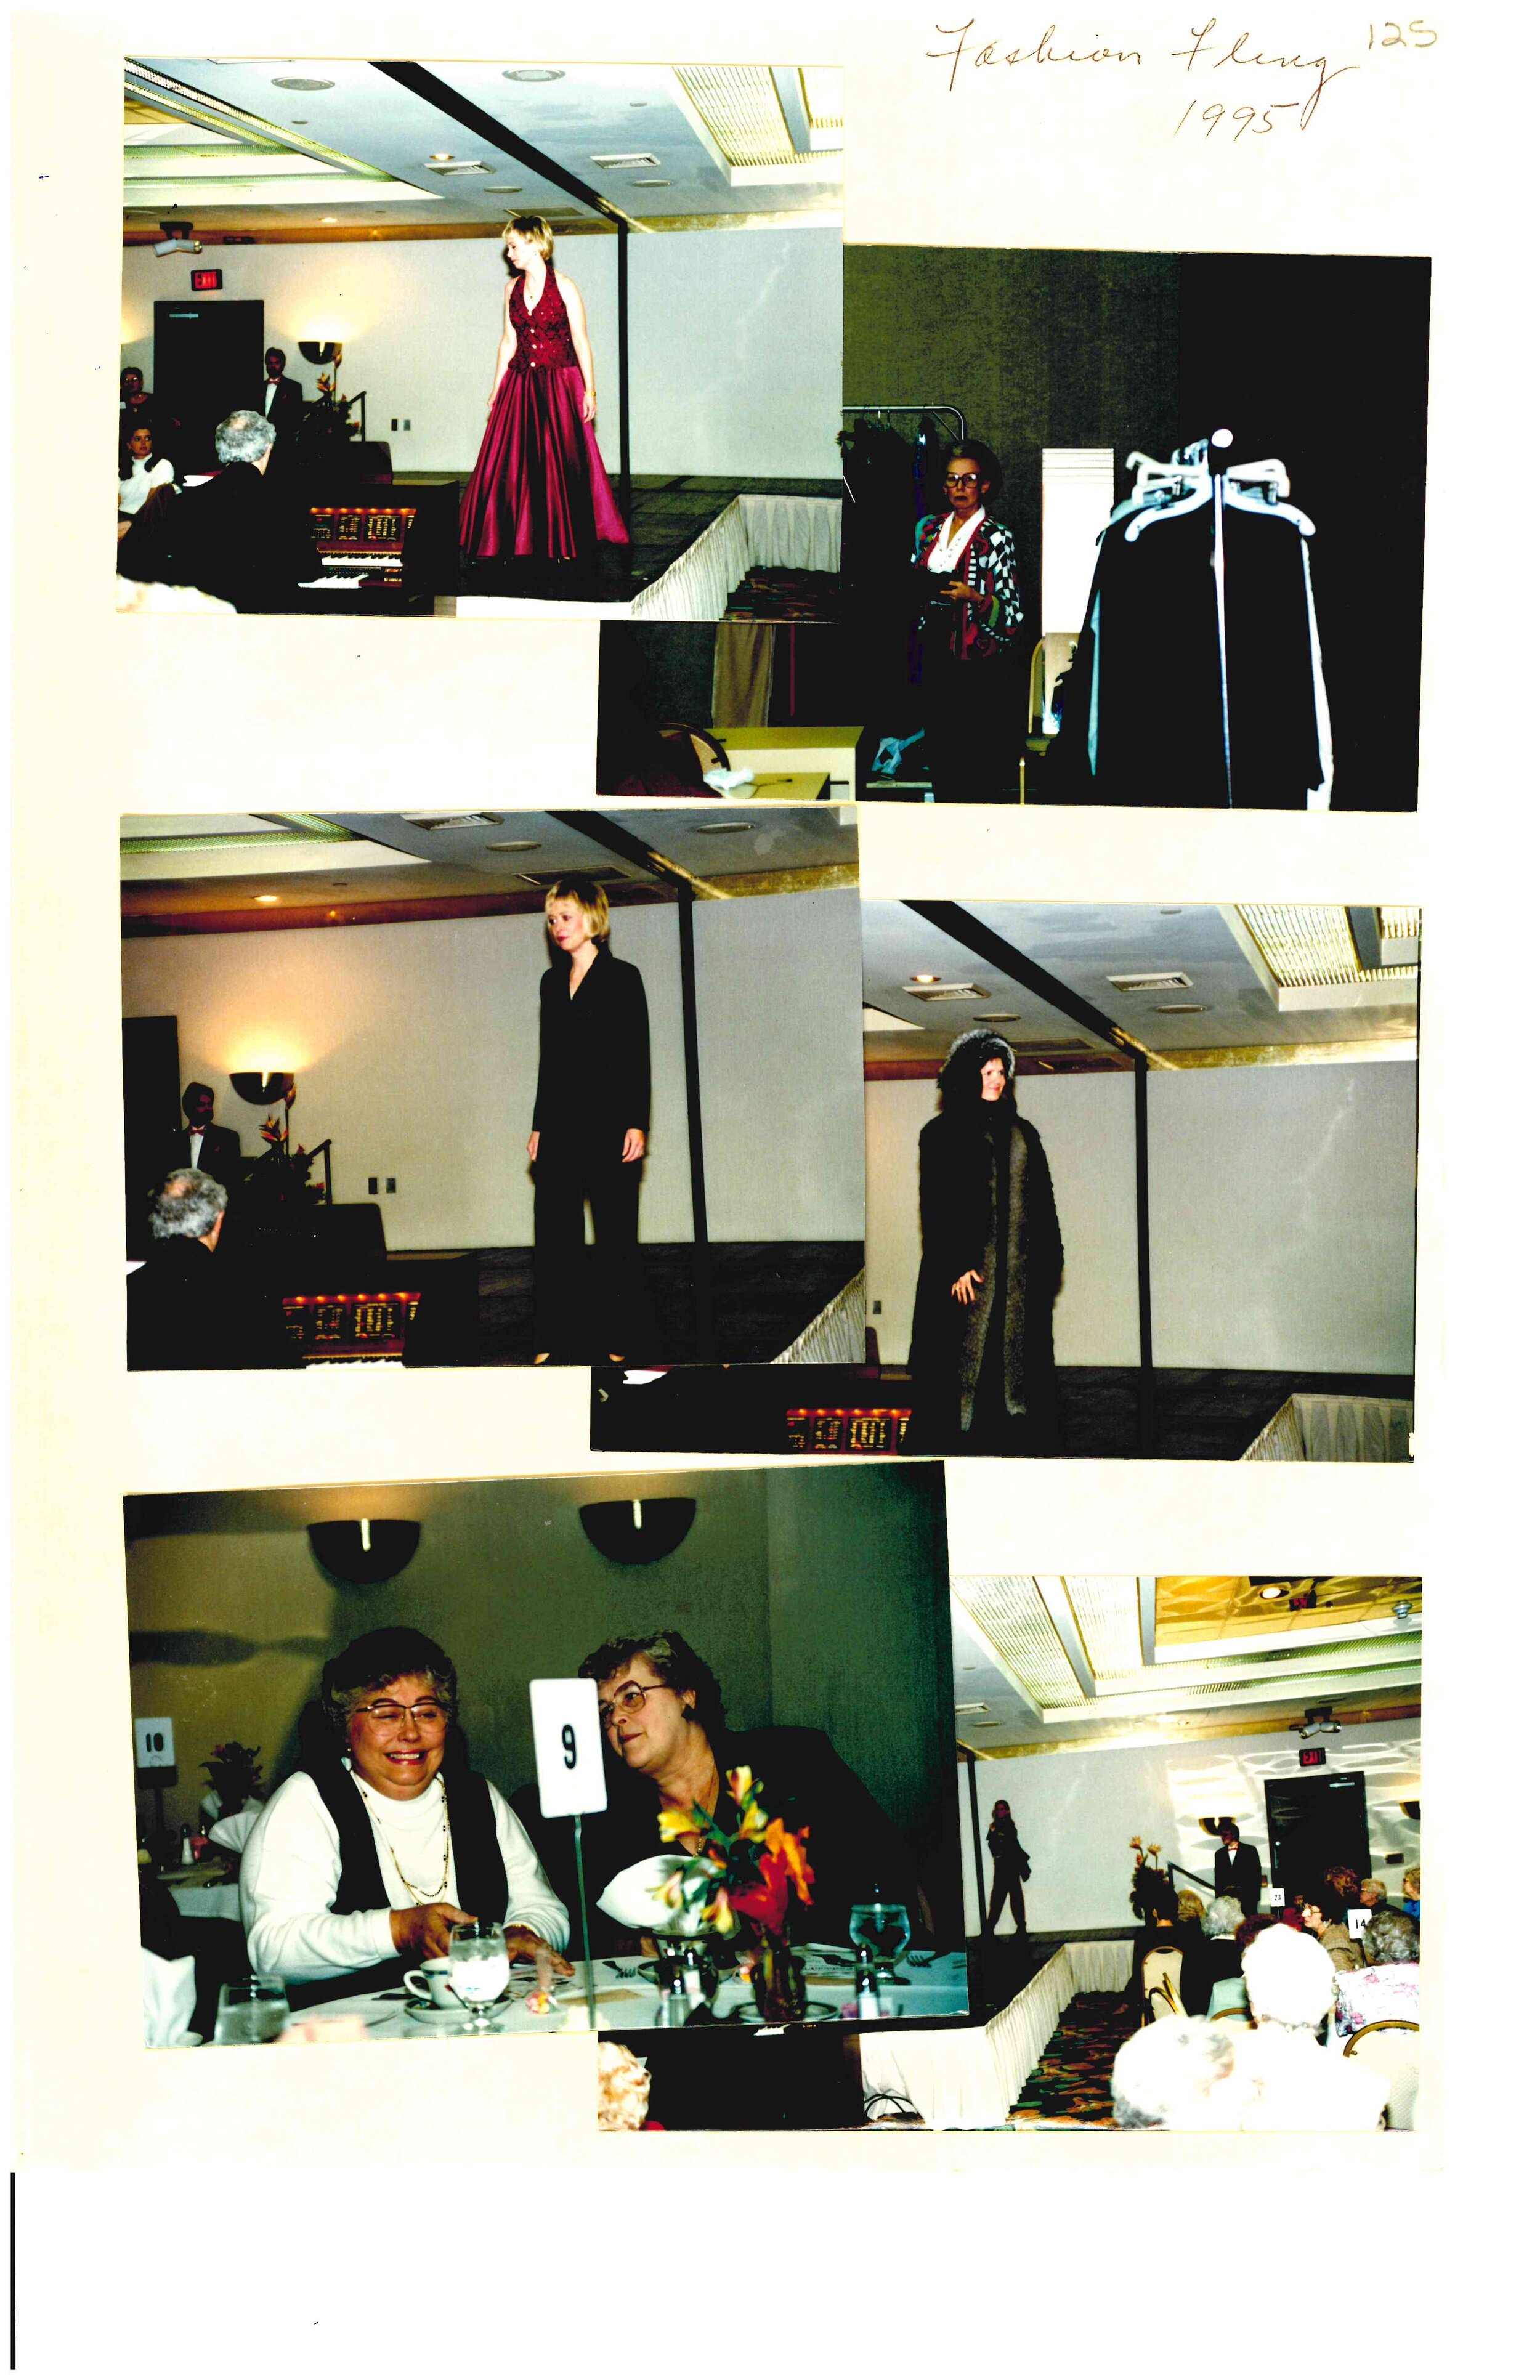 Fashion Fling 1995